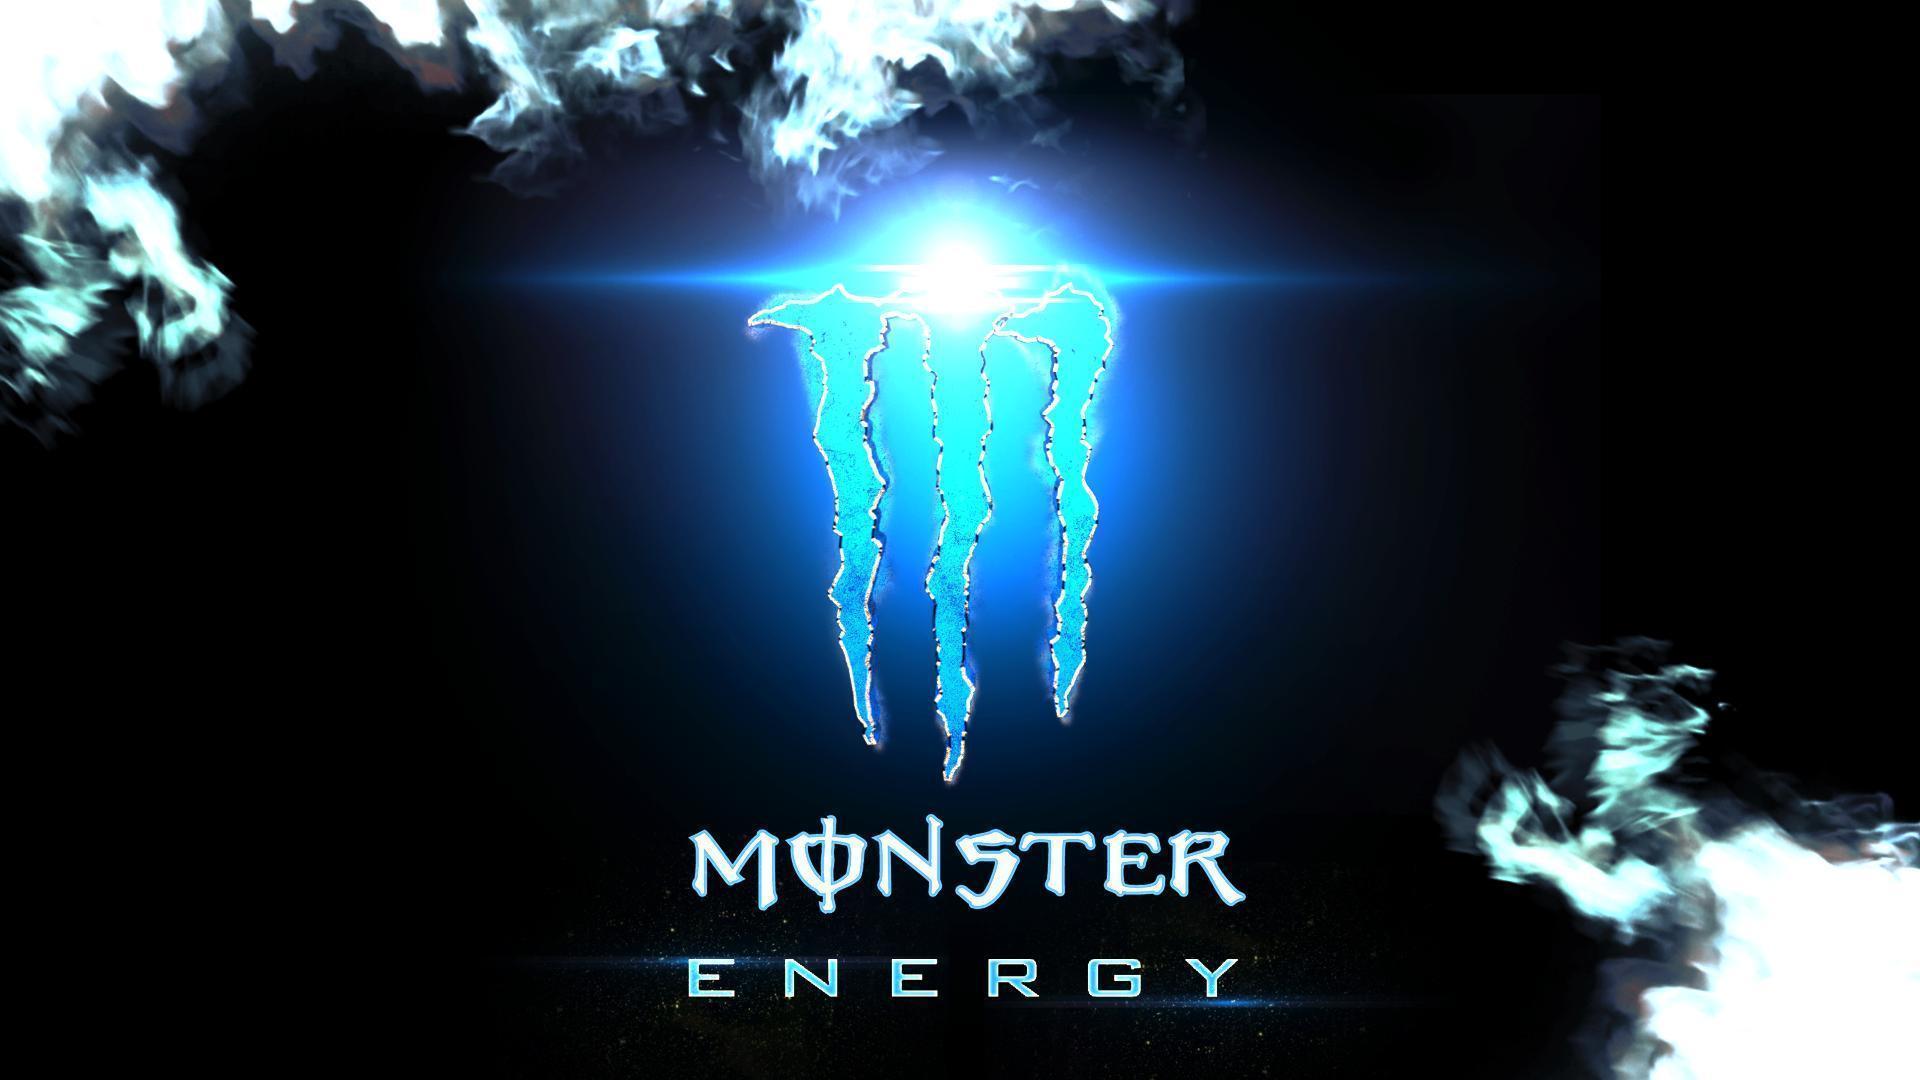 Monster Energy Wallpaper For Computer